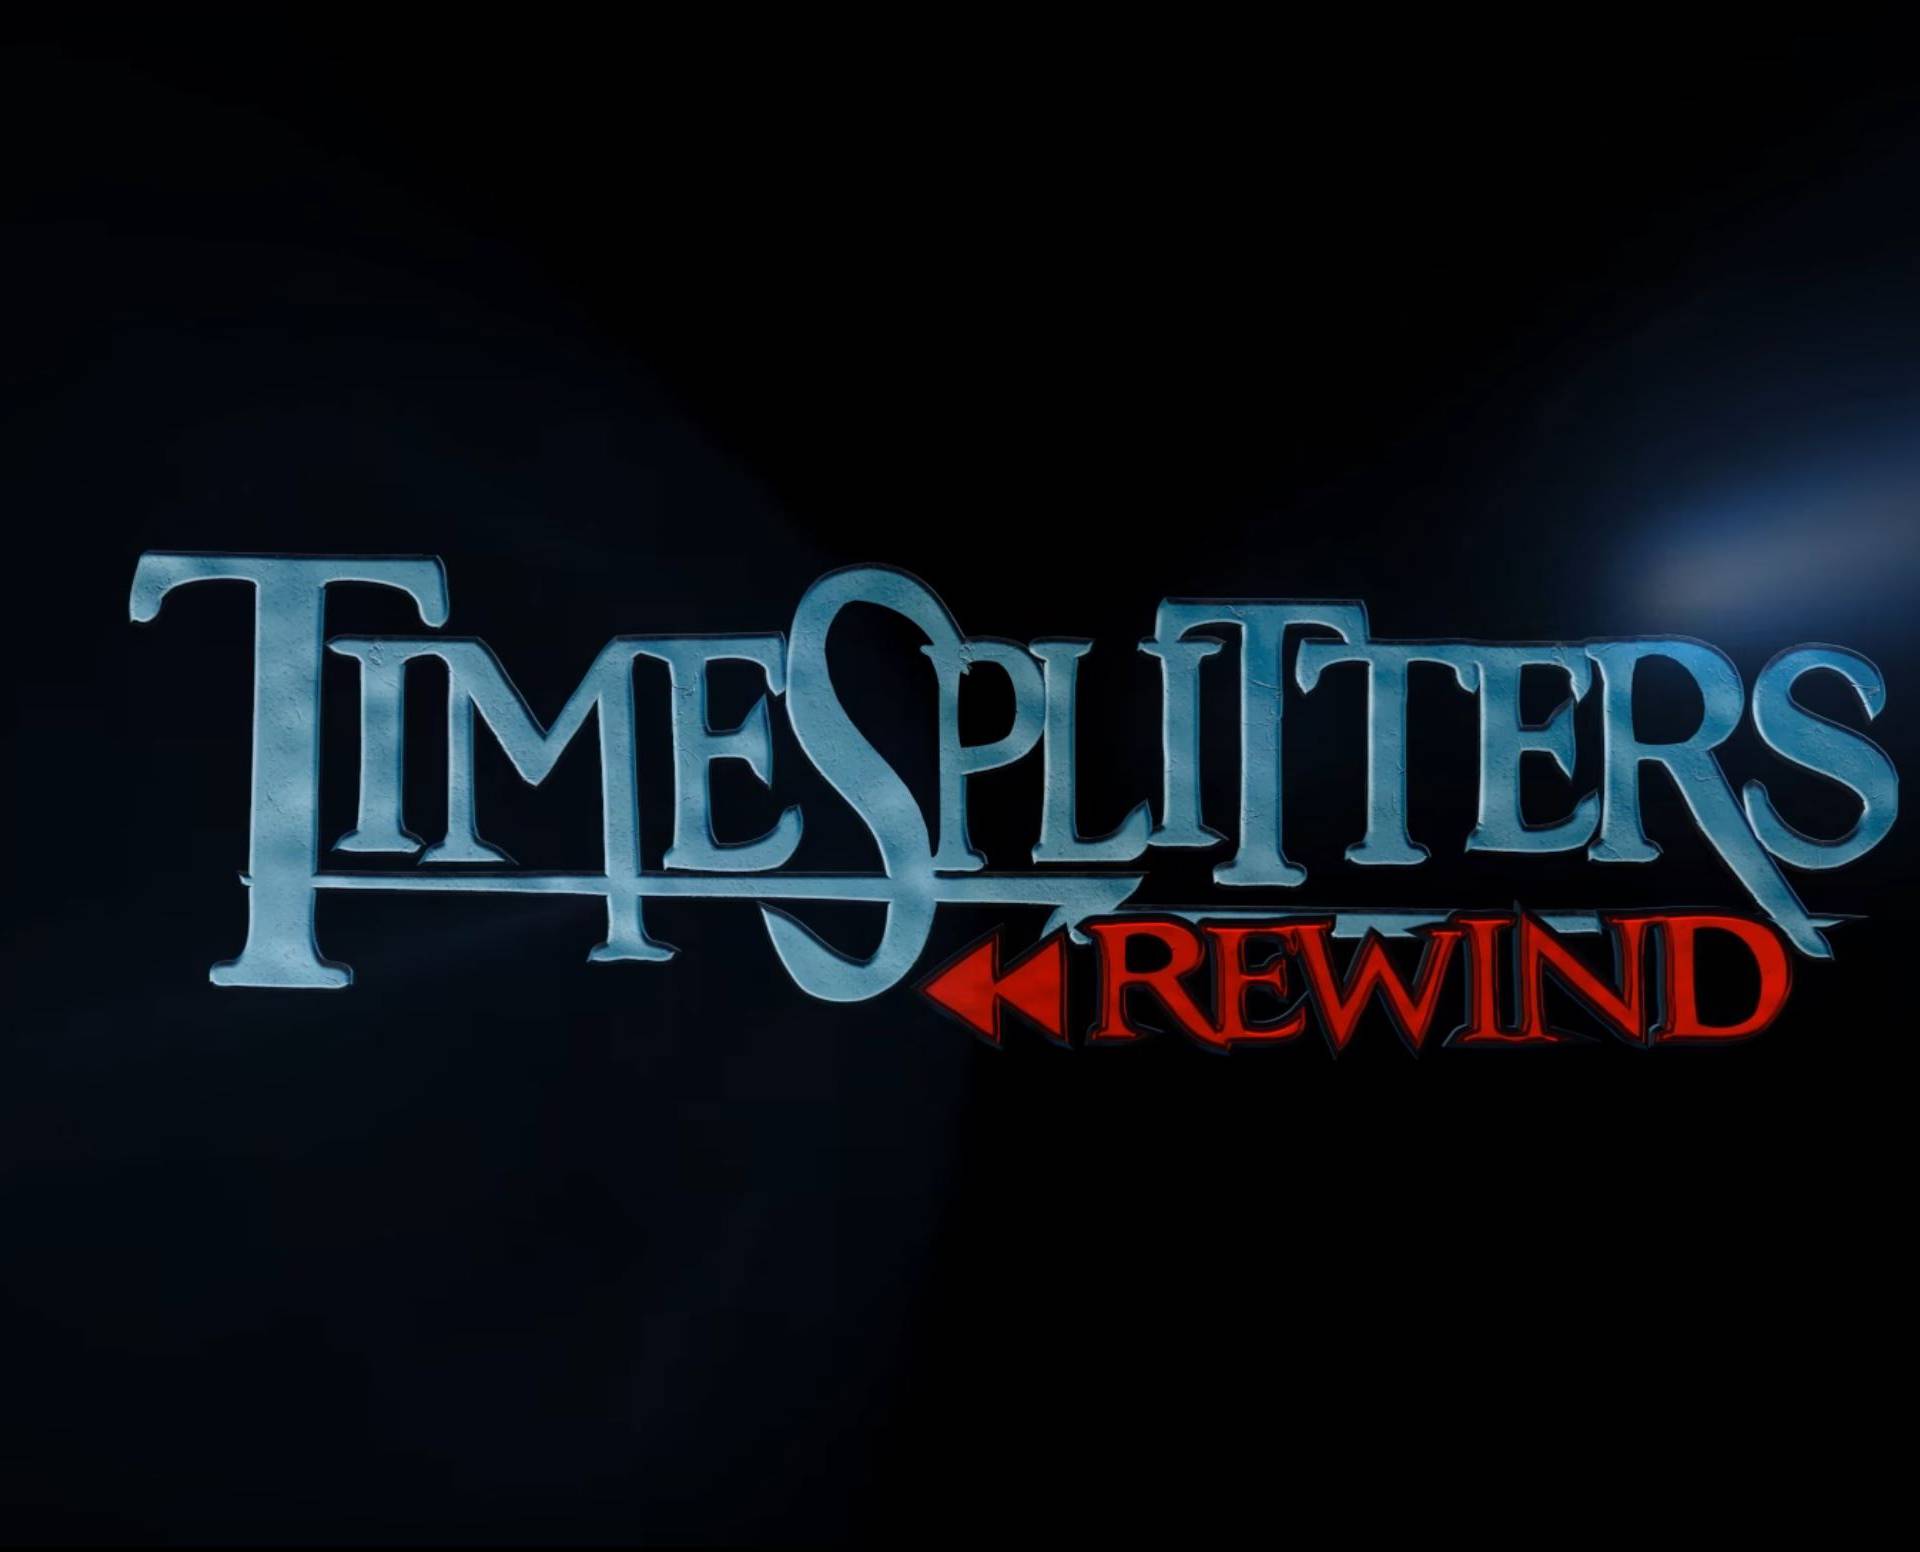 TimeSplitters: Rewind dobio je prvi trailer - koji otkriva malo